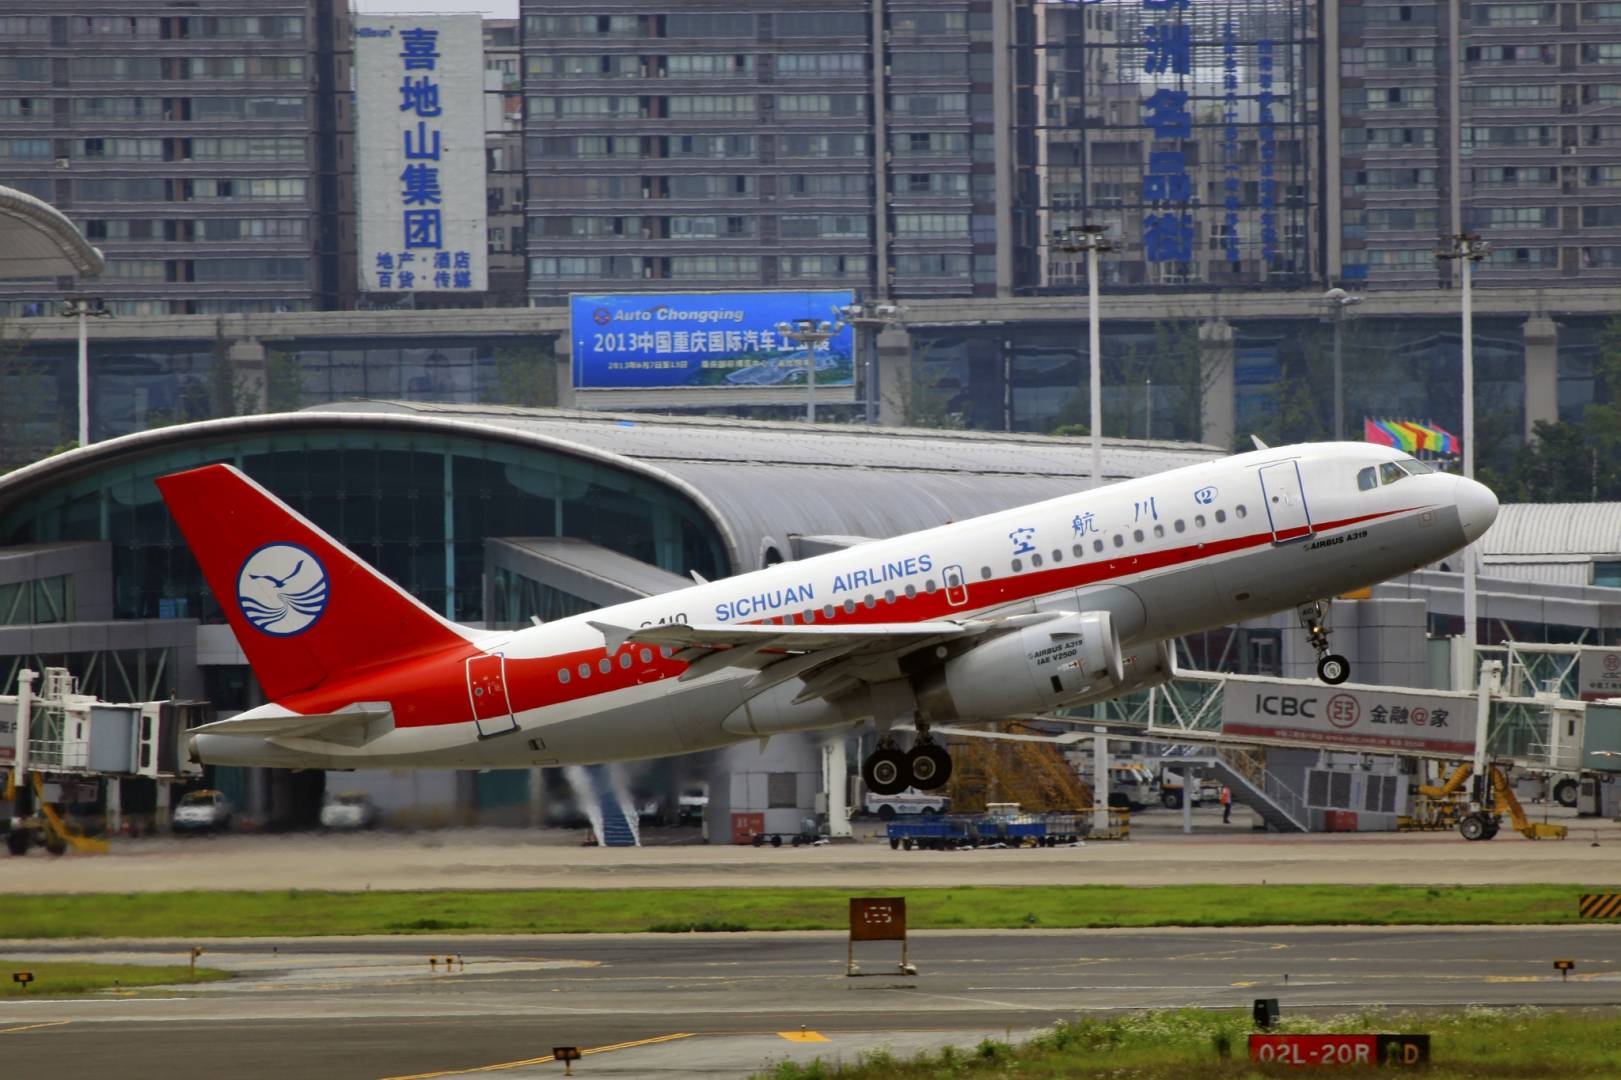 Sichuan airlinesсодержание а также история [ править ]